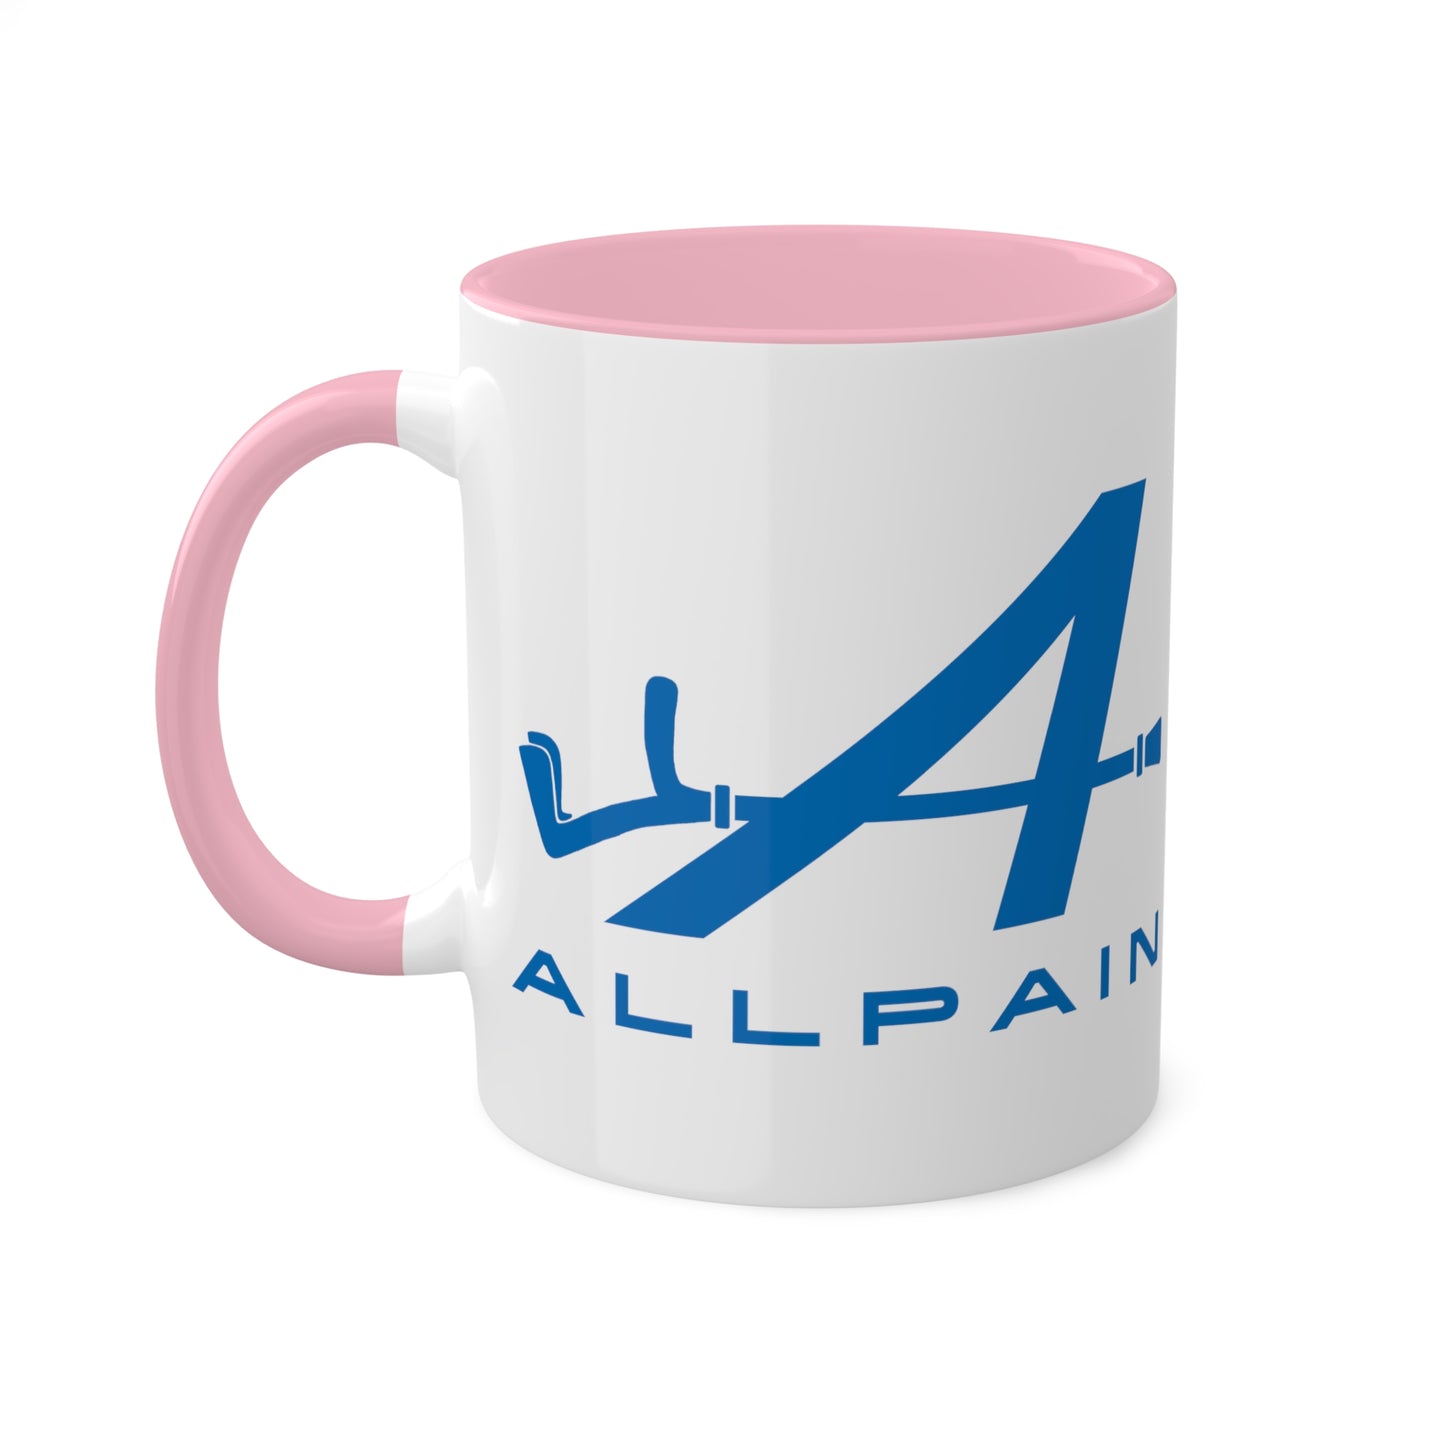 Allpain Alpine F1 Formula 1 Pierre Gasly Esteban Ocon Colorful Mug, 11oz Next Cult Brand Alpine, F1